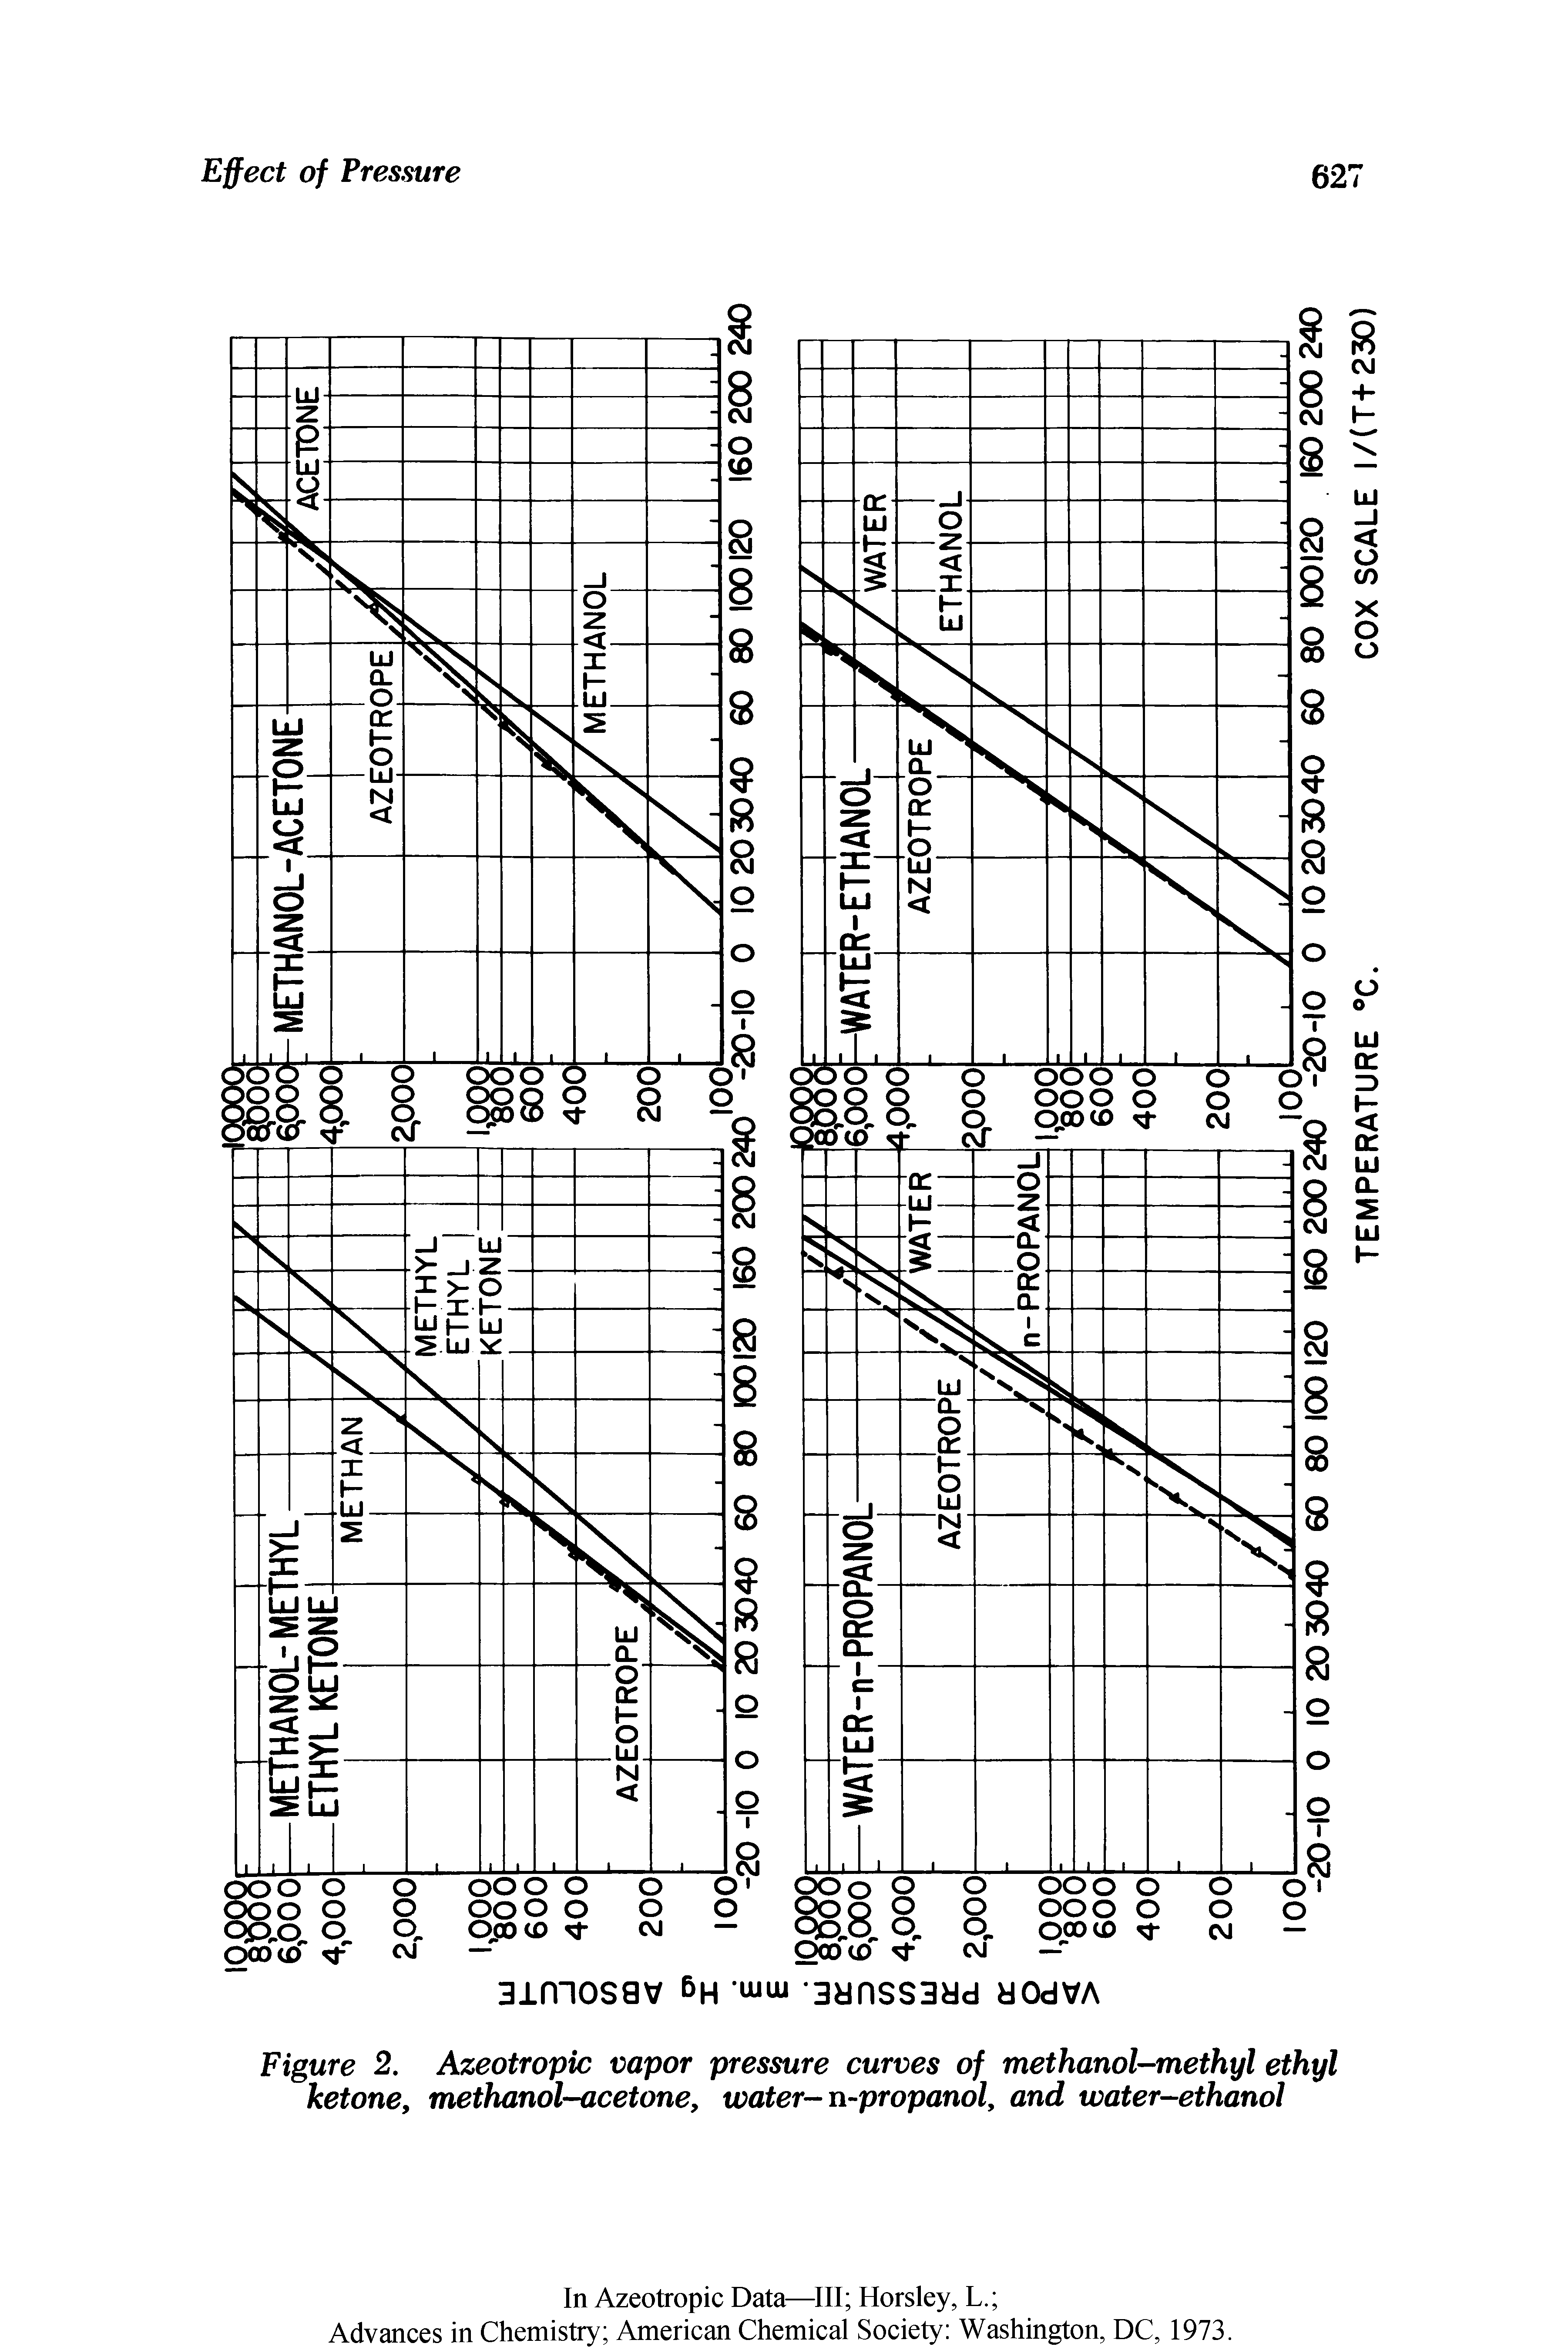 Figure 2. Azeotropic vapor pressure curves of methanol-methyl ethyl ketone, methanol-acetone, water-n-propanol, and water-ethanol...